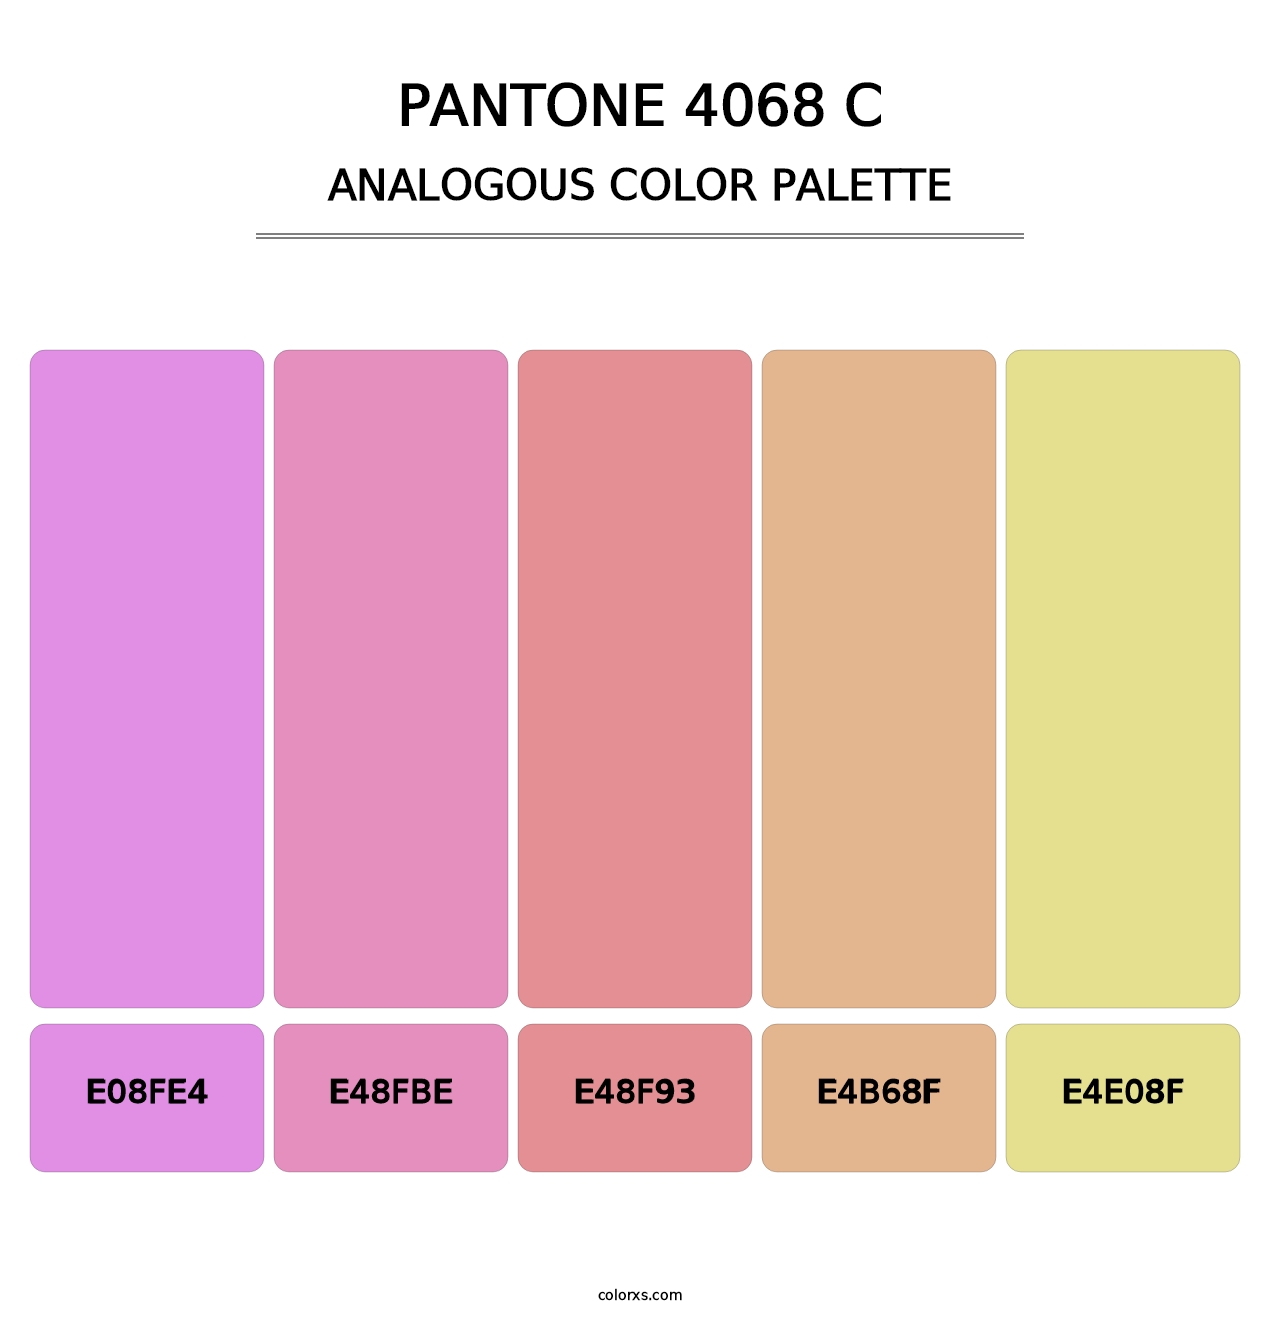 PANTONE 4068 C - Analogous Color Palette